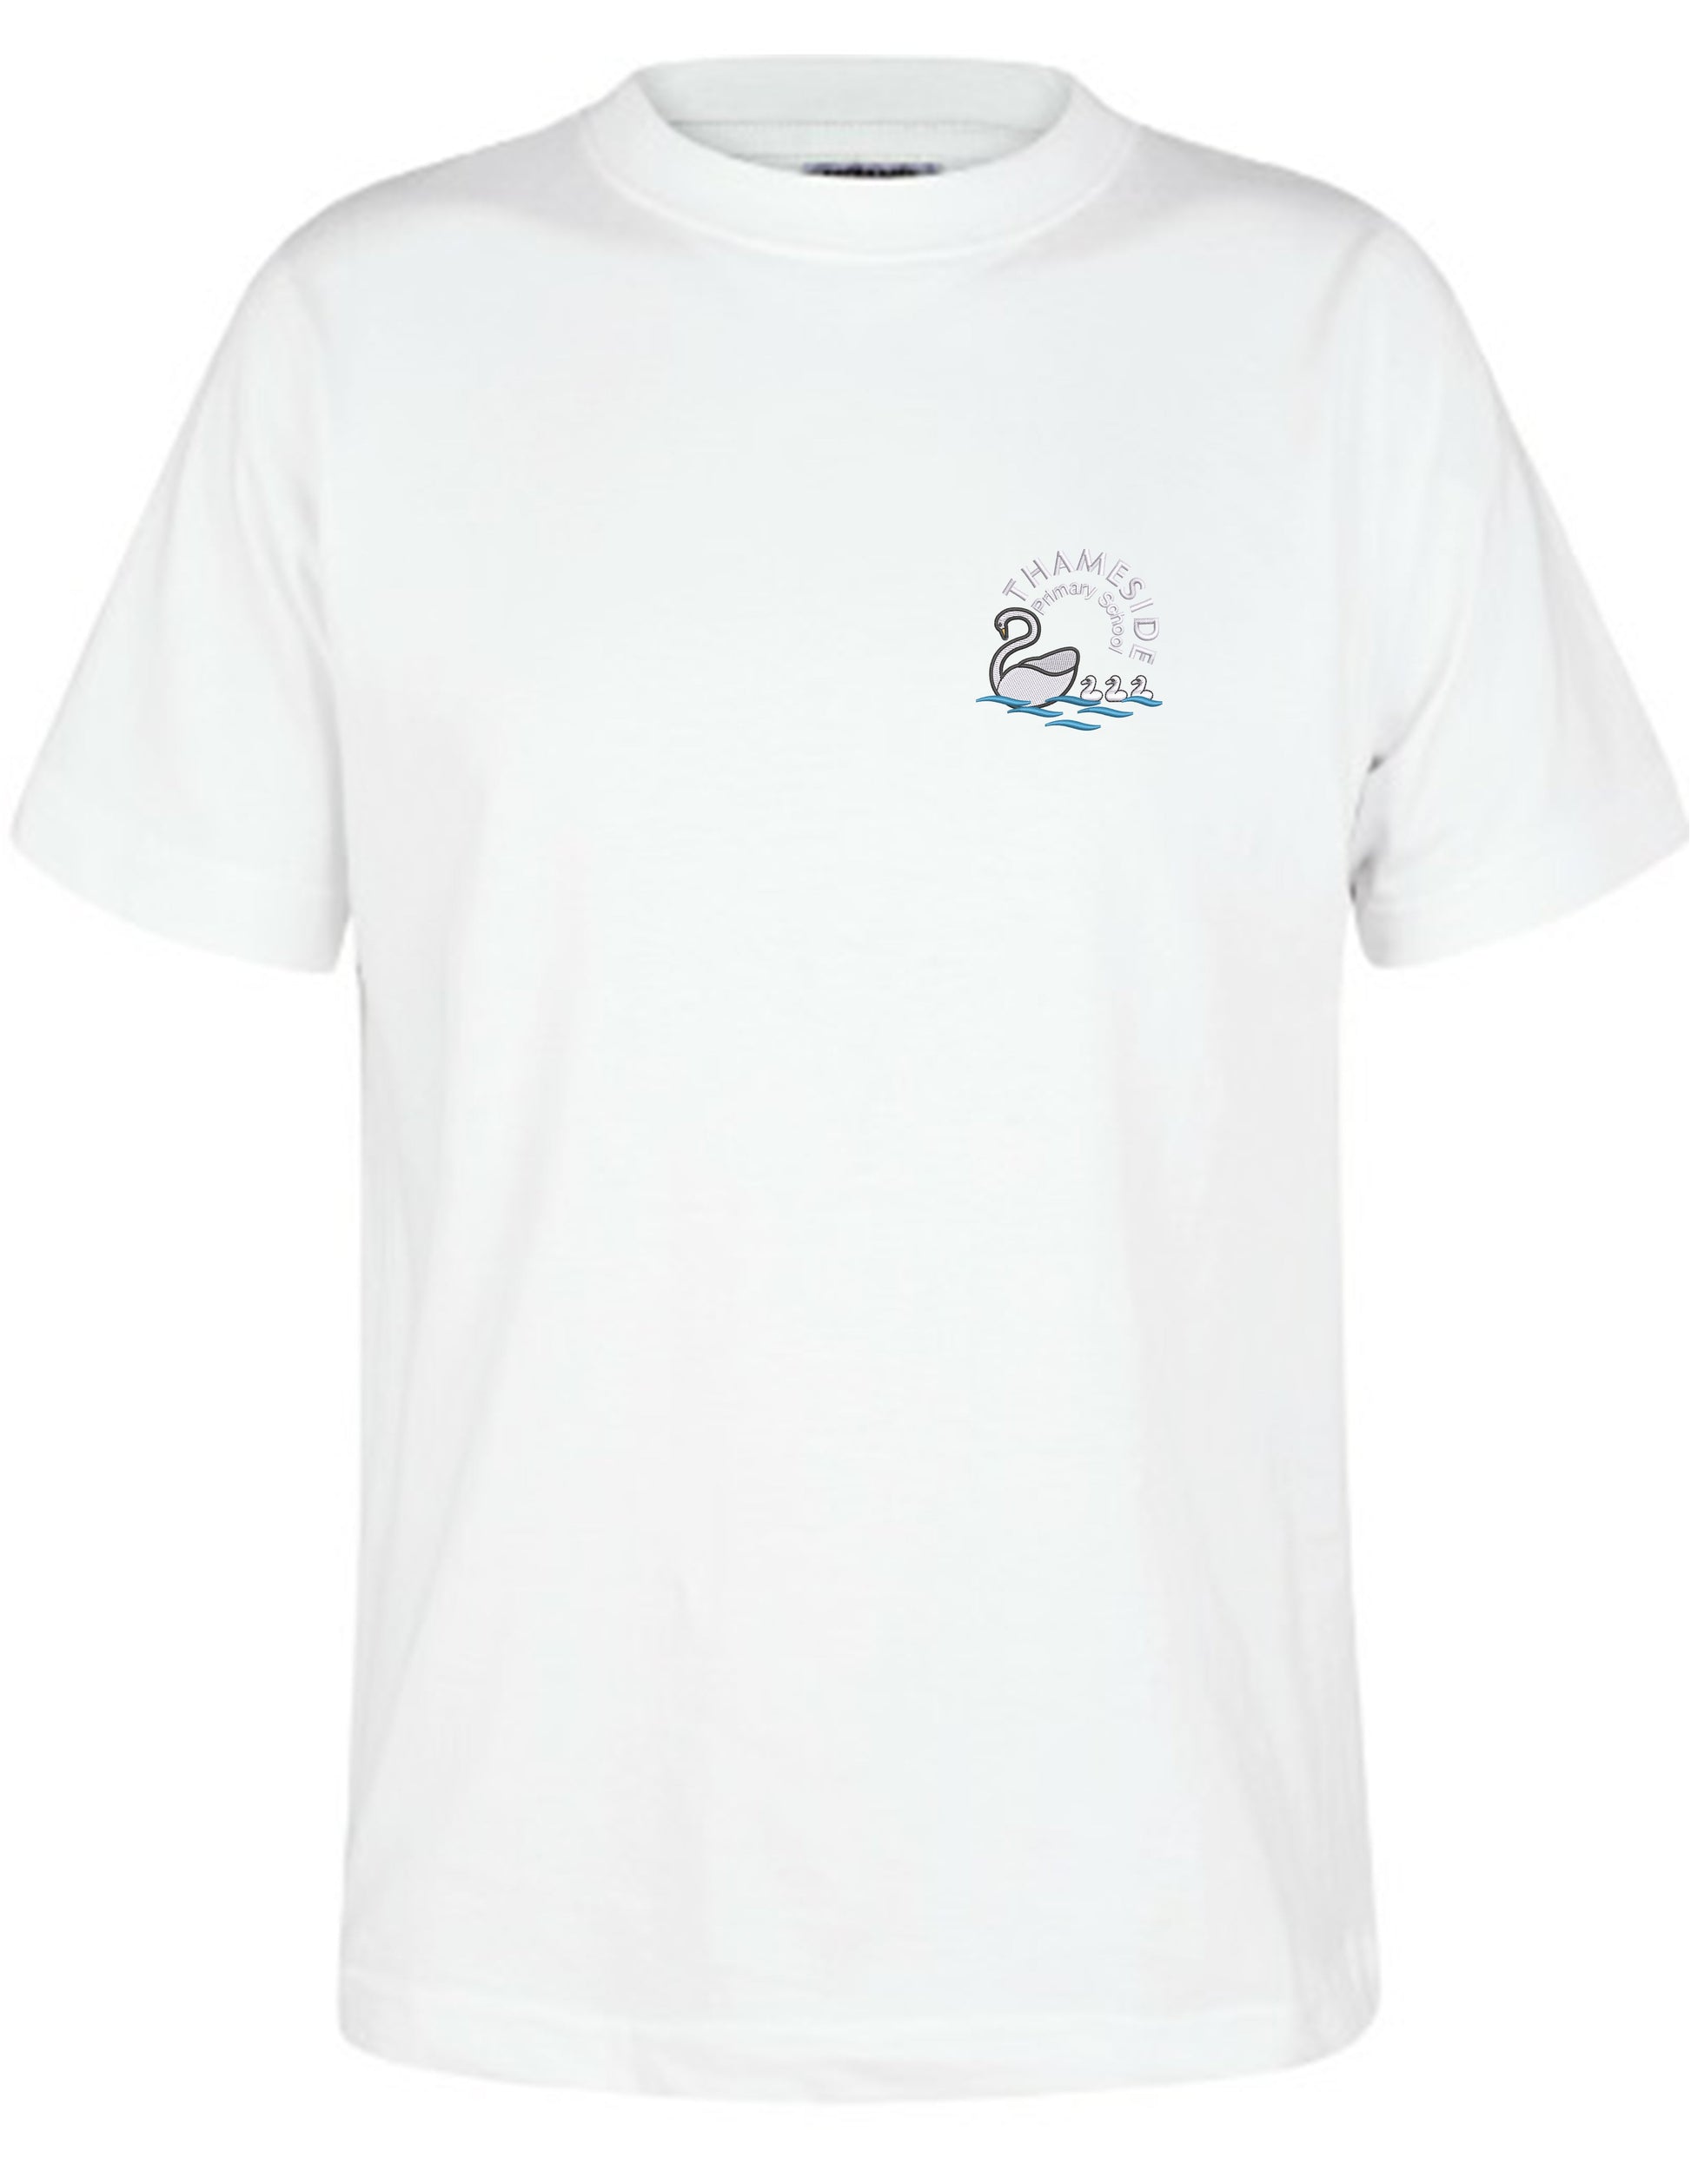 Thameside Primary School - Unisex Cotton T-Shirt - White - School Uniform Shop